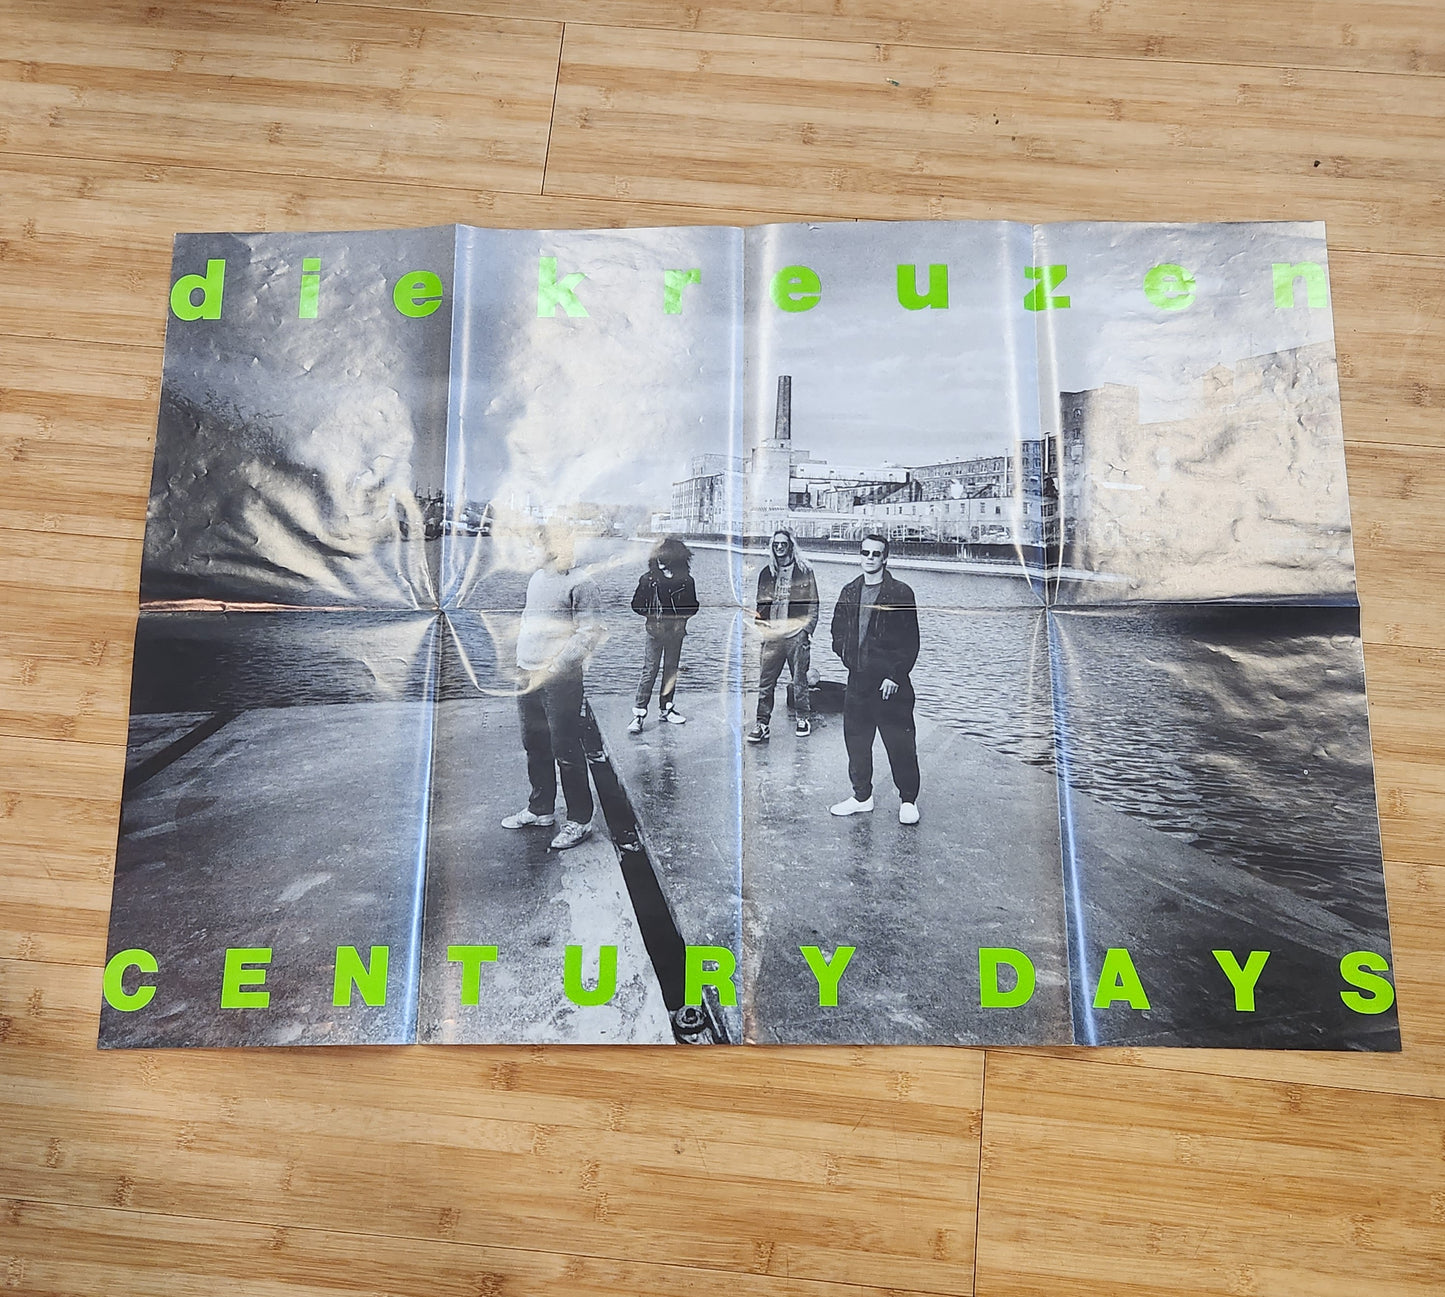 Die Kreuzen "Century Days" 1988 Punk Rock Record Album With Poster